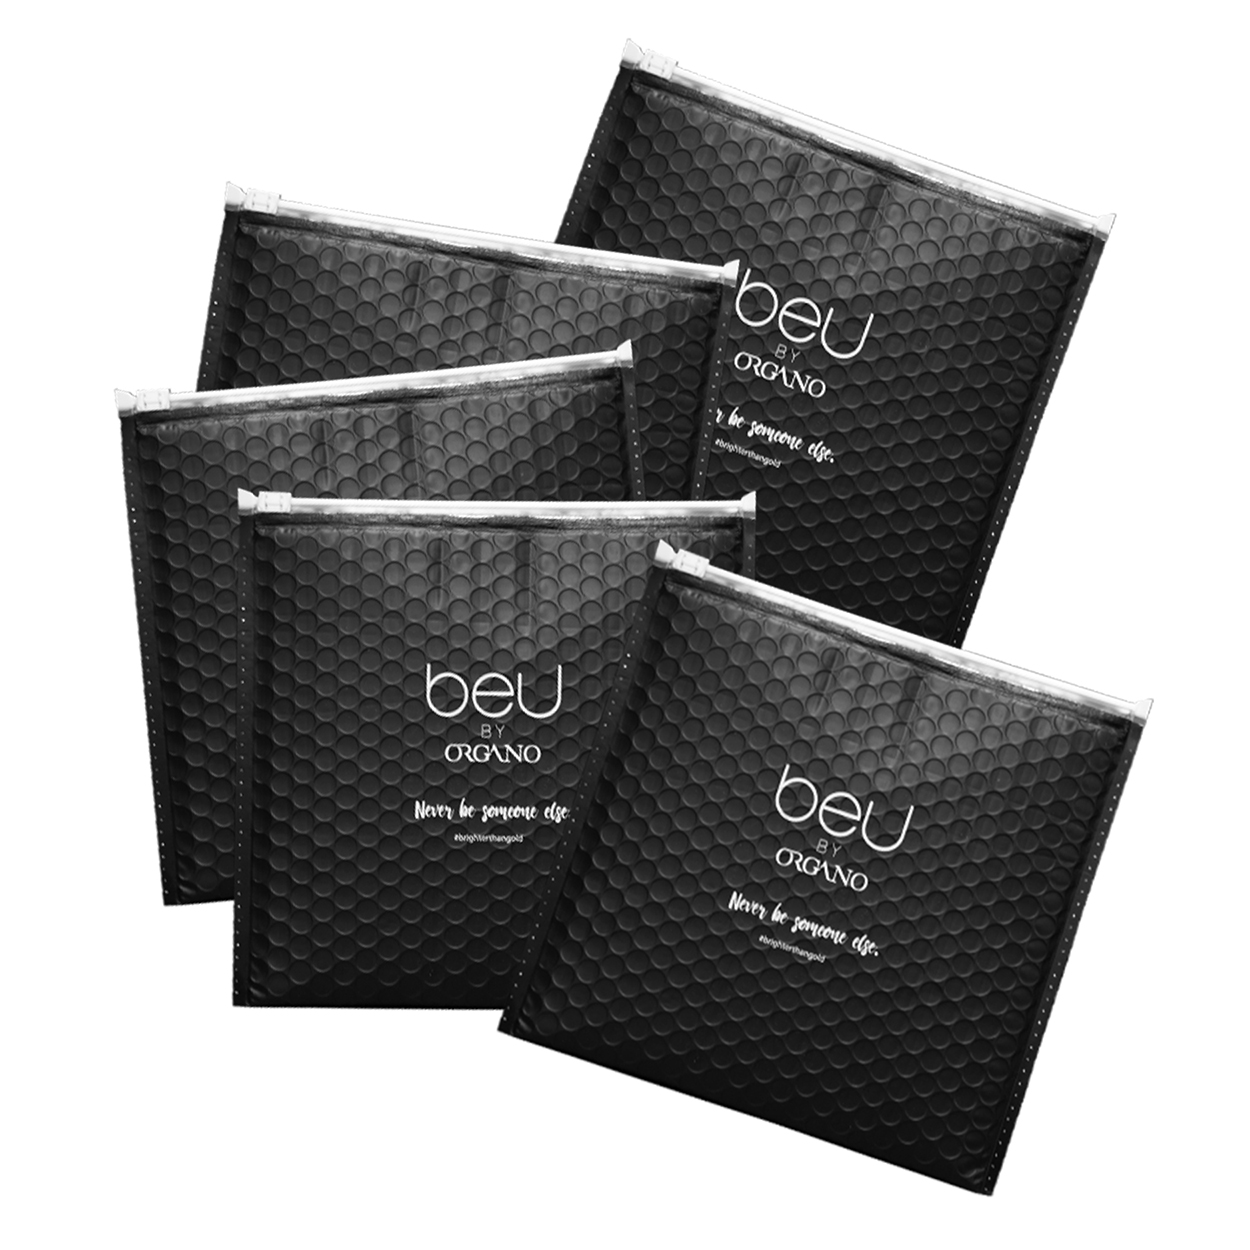 BeU Black Mailer Pack of 5